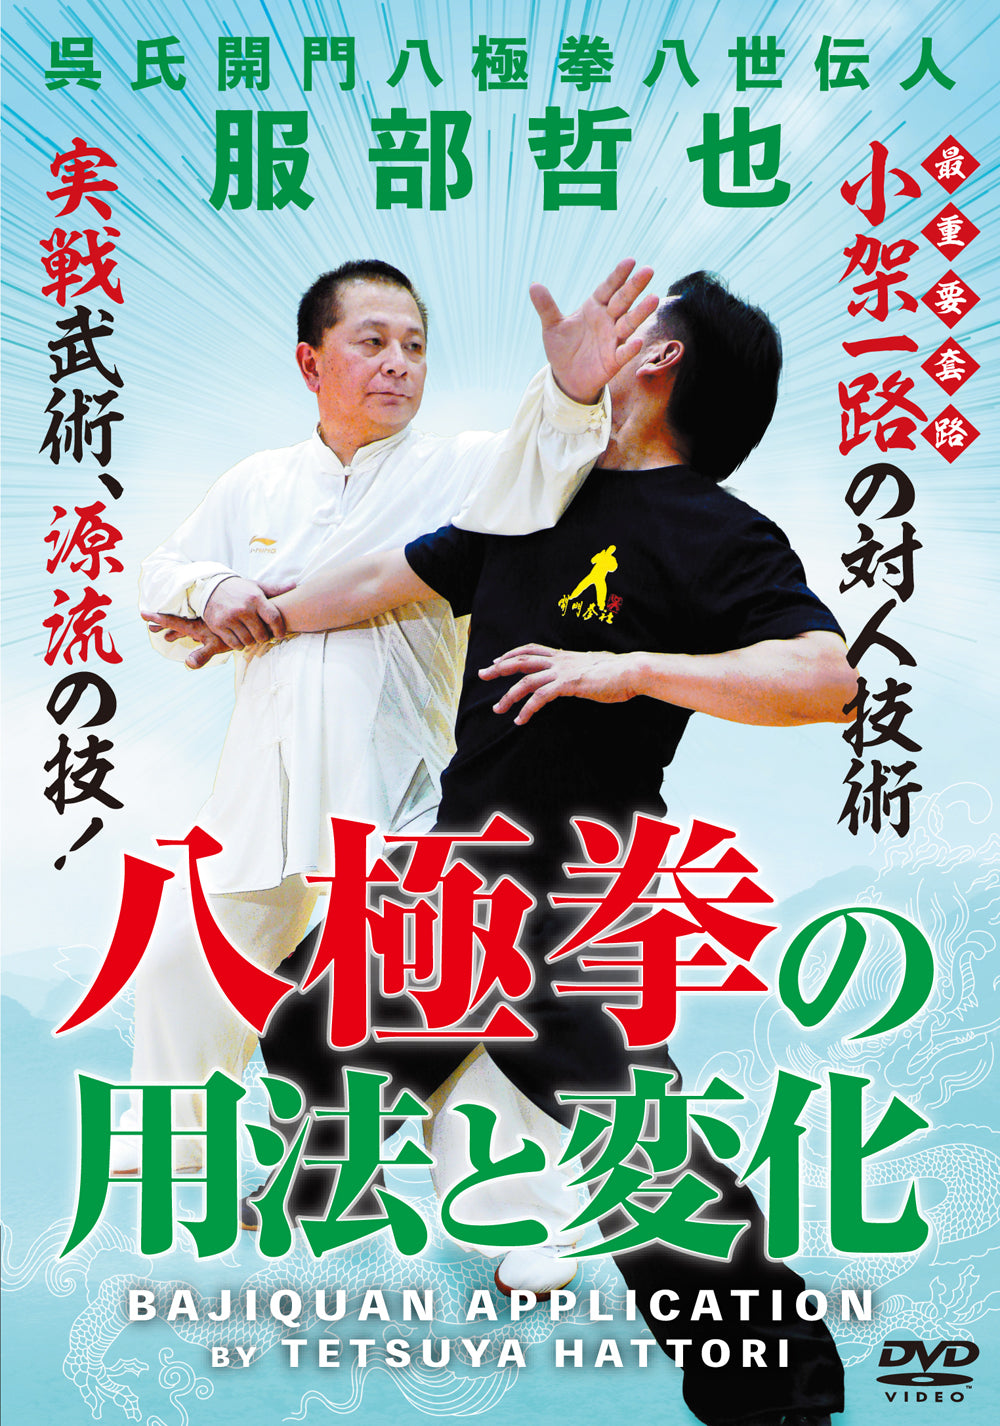 DVD de aplicación de Bajiquan de Tetsuya Hattori